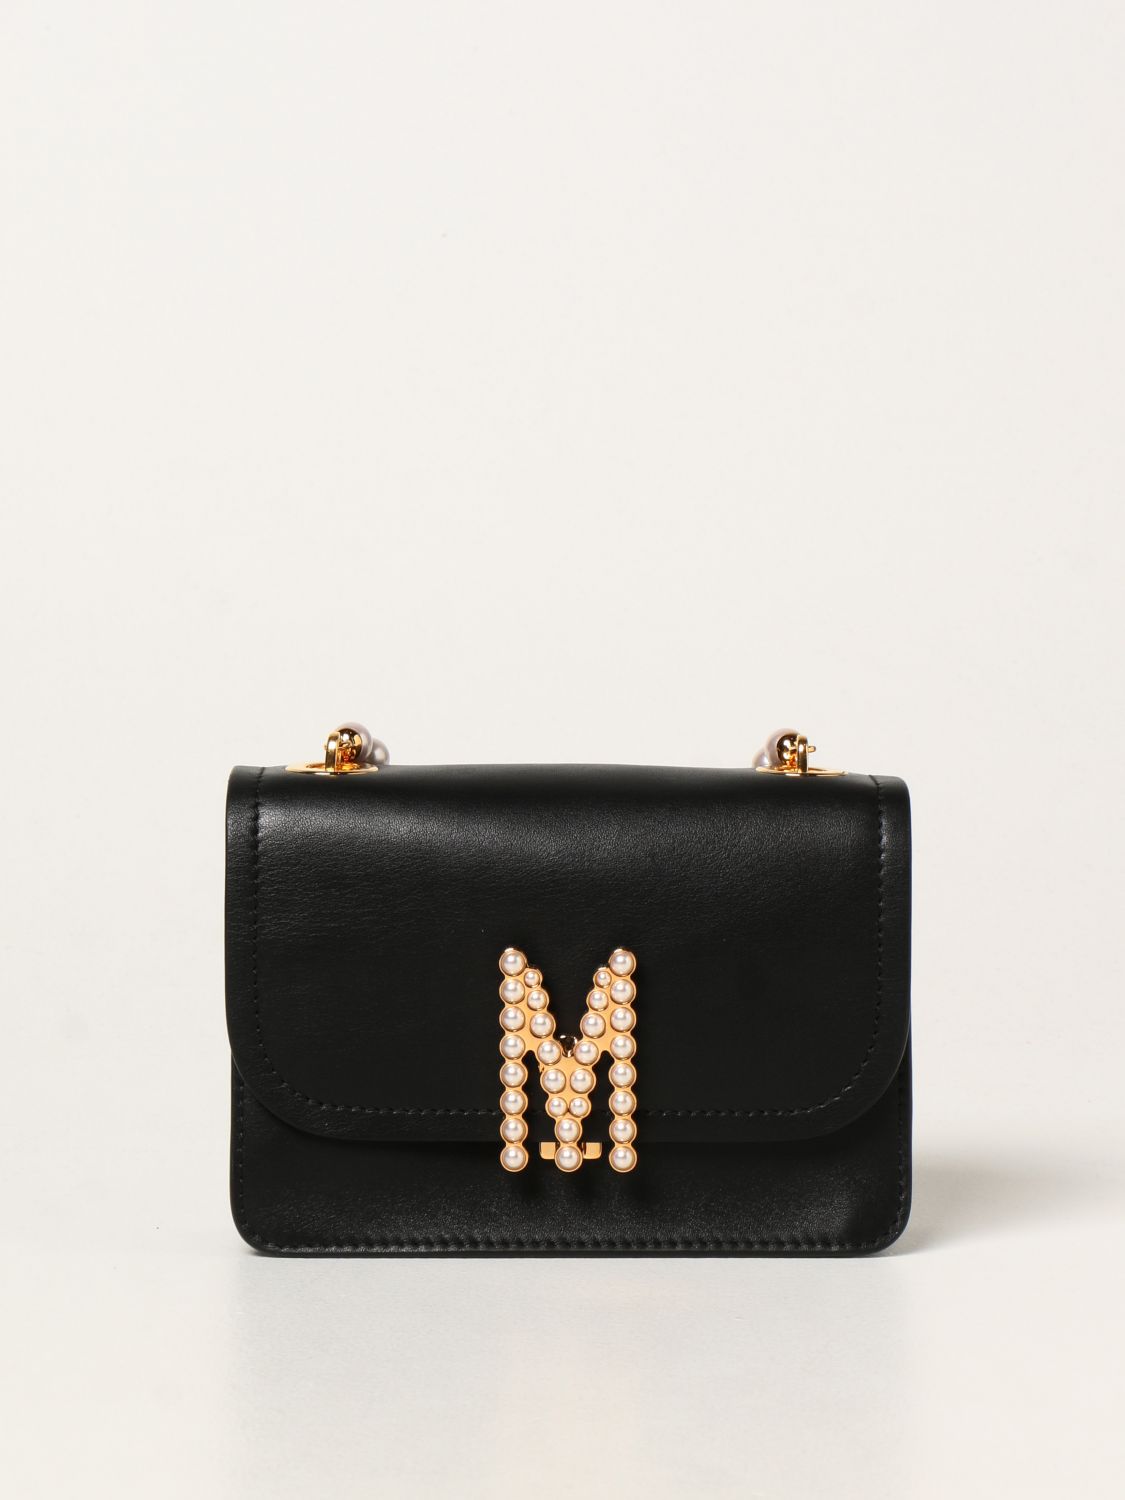 Mini- Tasche Moschino Couture: Handtasche damen Moschino Couture schwarz 1